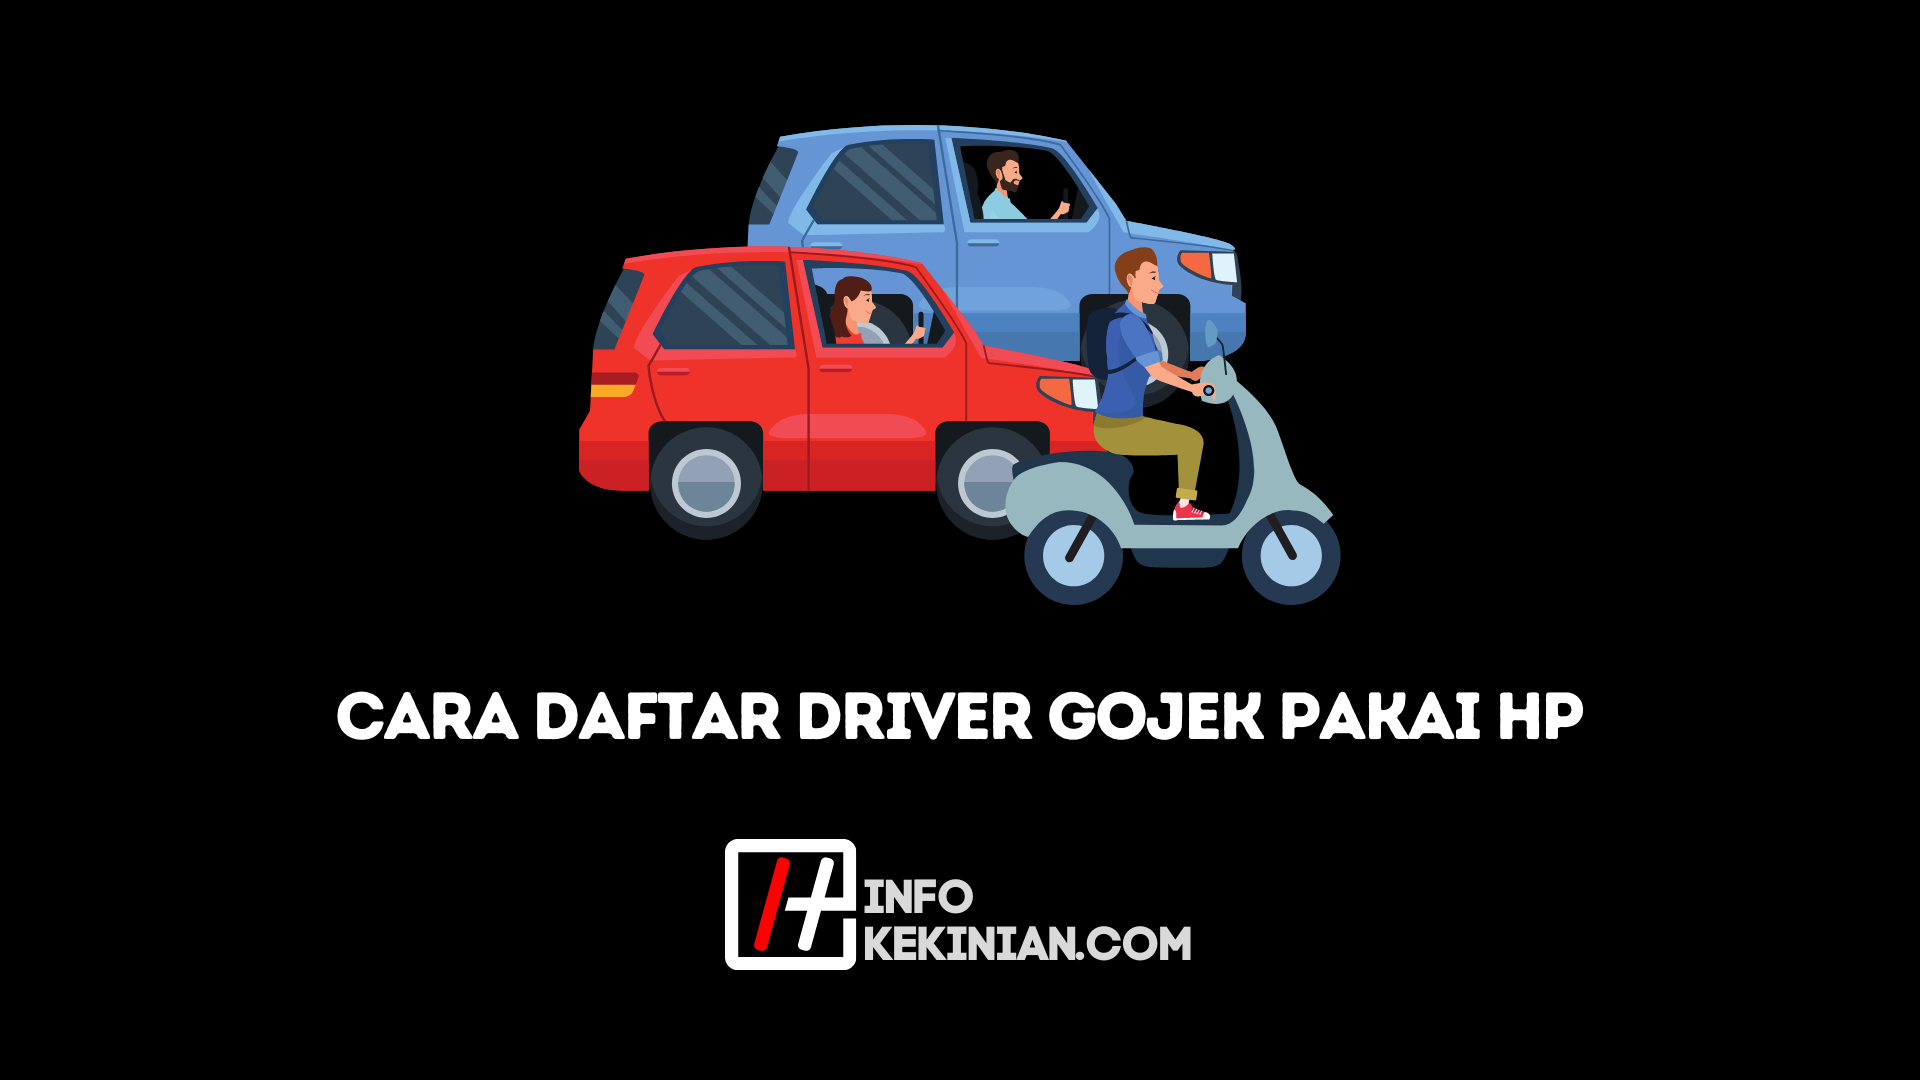 Cara Daftar Driver Gojek Via Aplikasi Terbaru